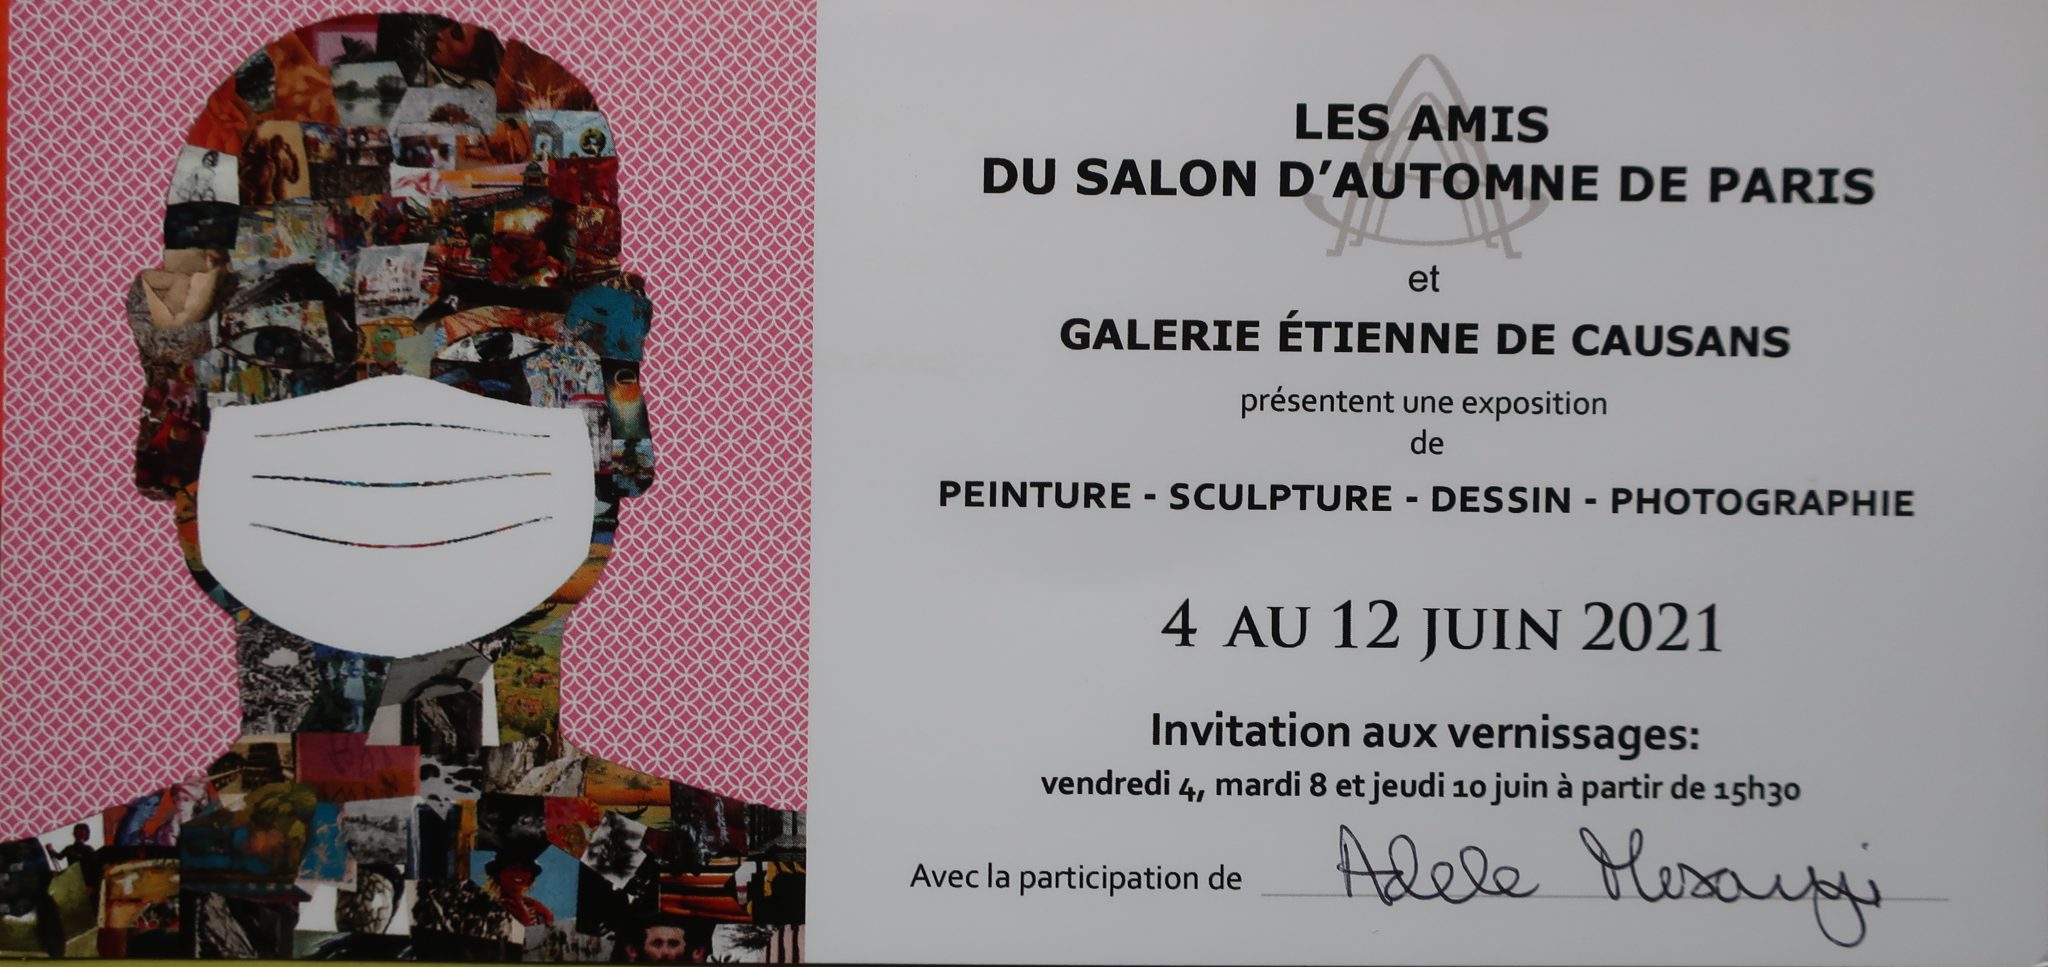 EXPOSITION DES ARTISTES DES AMIS DU SALON D'AUTOMNE